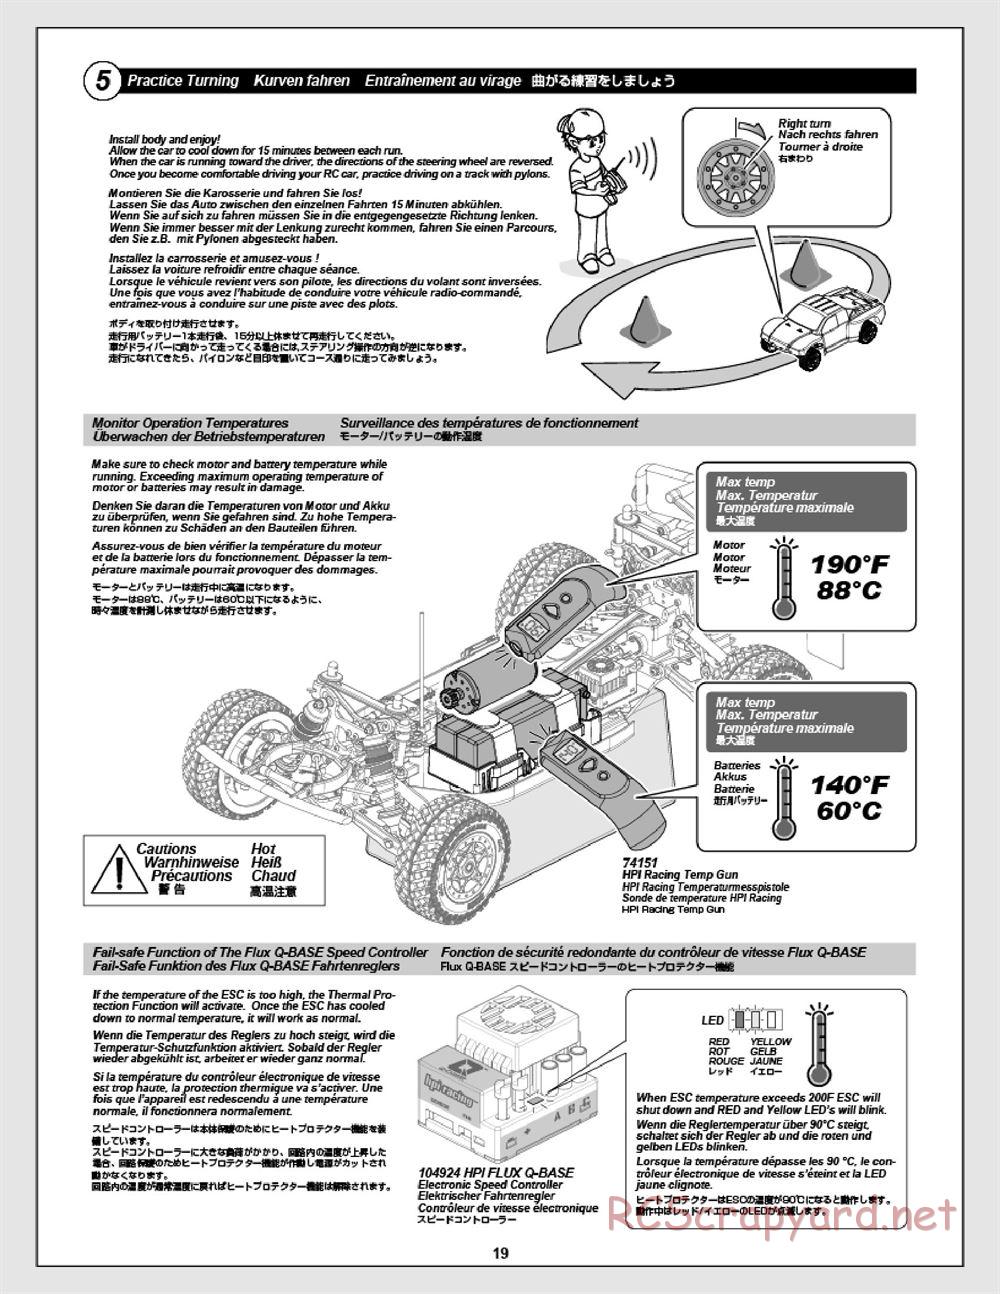 HPI - Apache SC Flux - Manual - Page 19